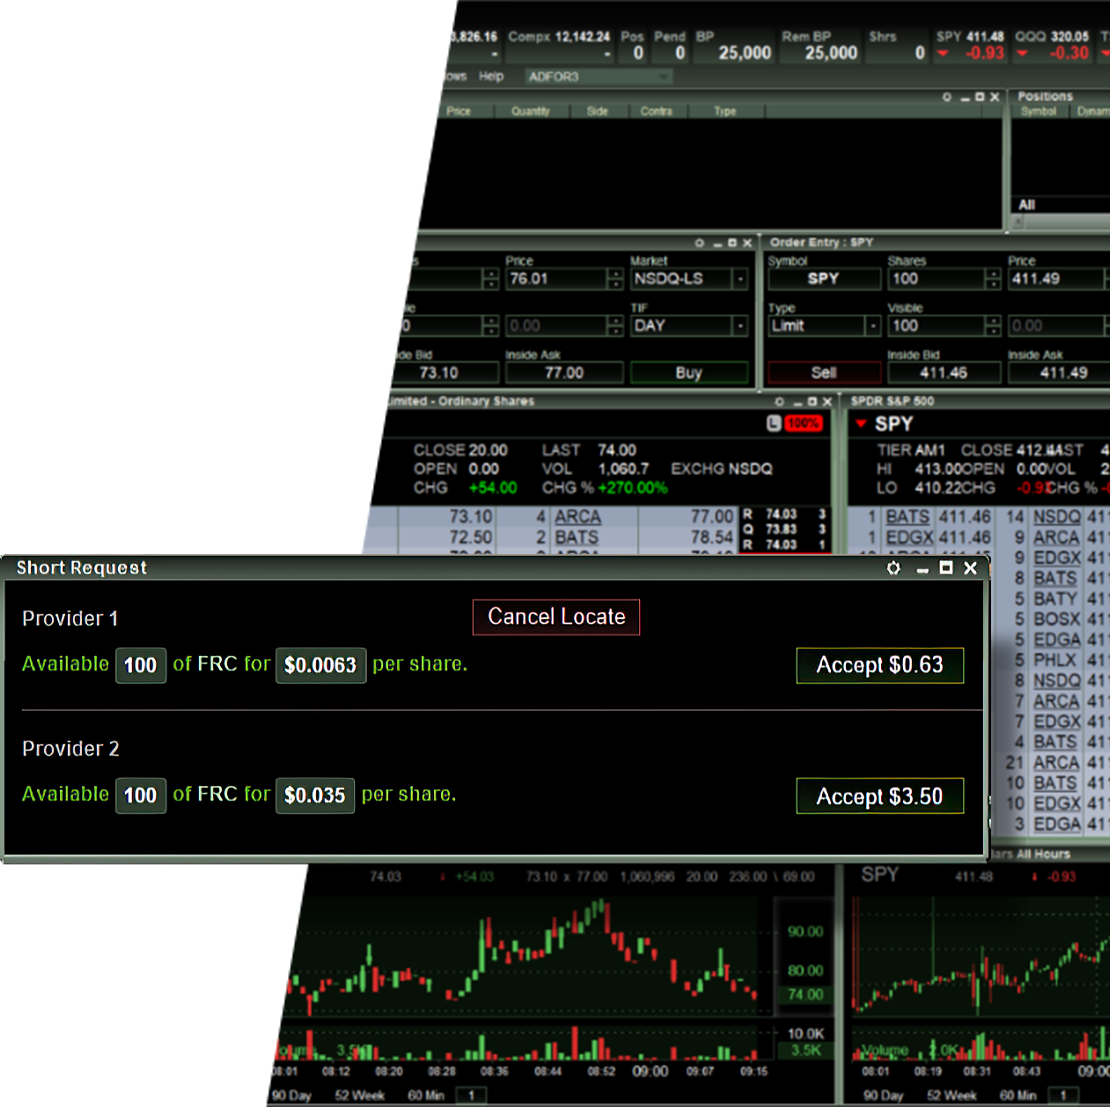 Stock Lending Trading Platform Dashboard from Lightspeed